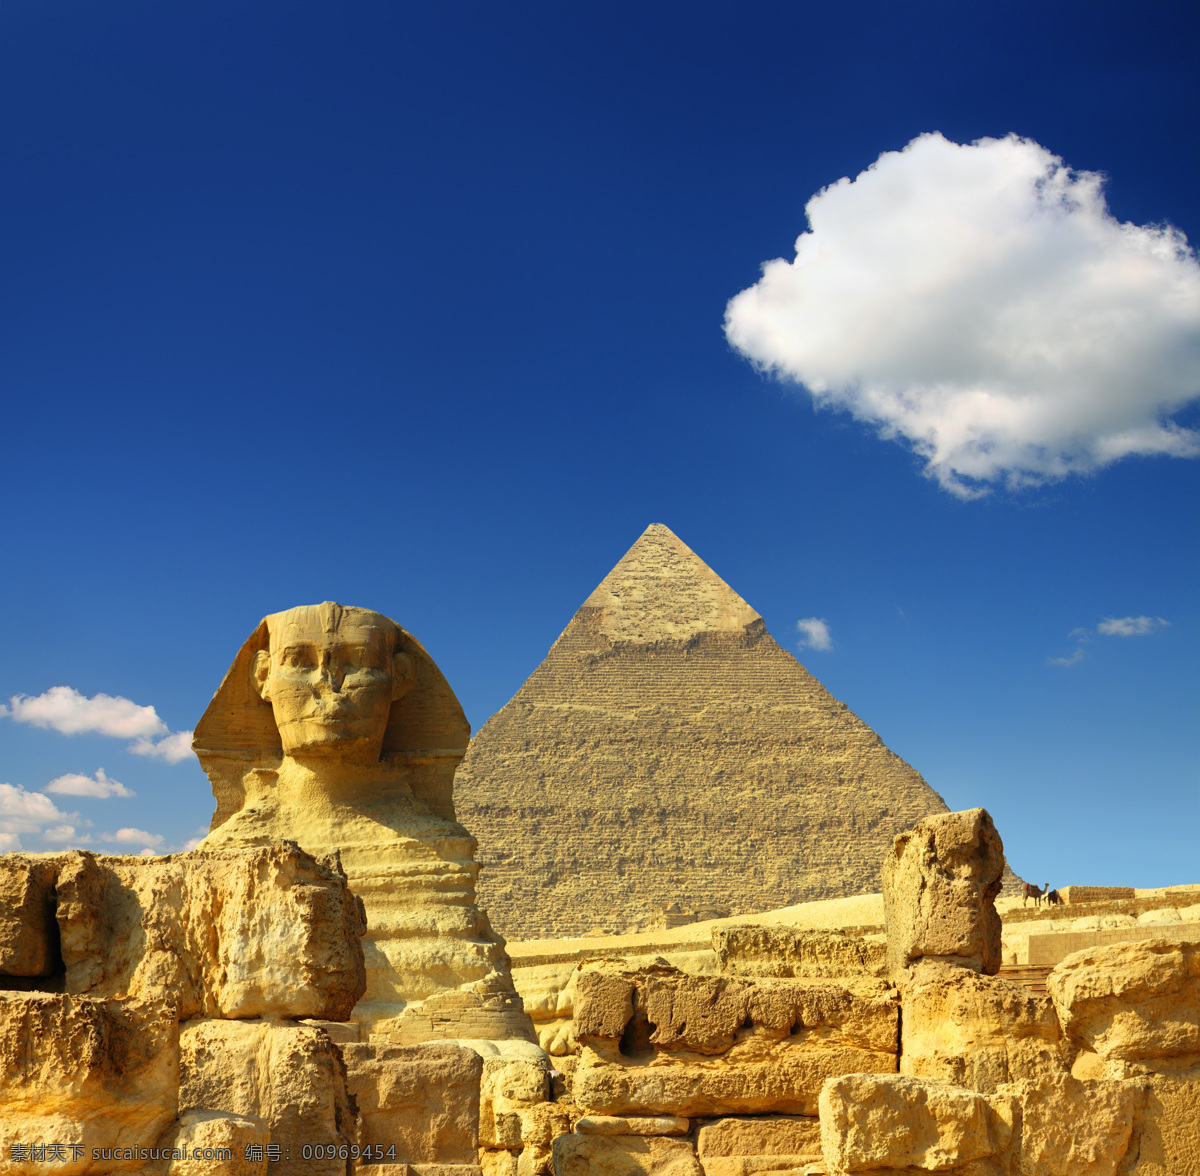 金字塔 埃及金字塔 沙漠 狮身人面像 蓝天 白云 古迹 人类文明 古埃及 建筑园林 建筑摄影